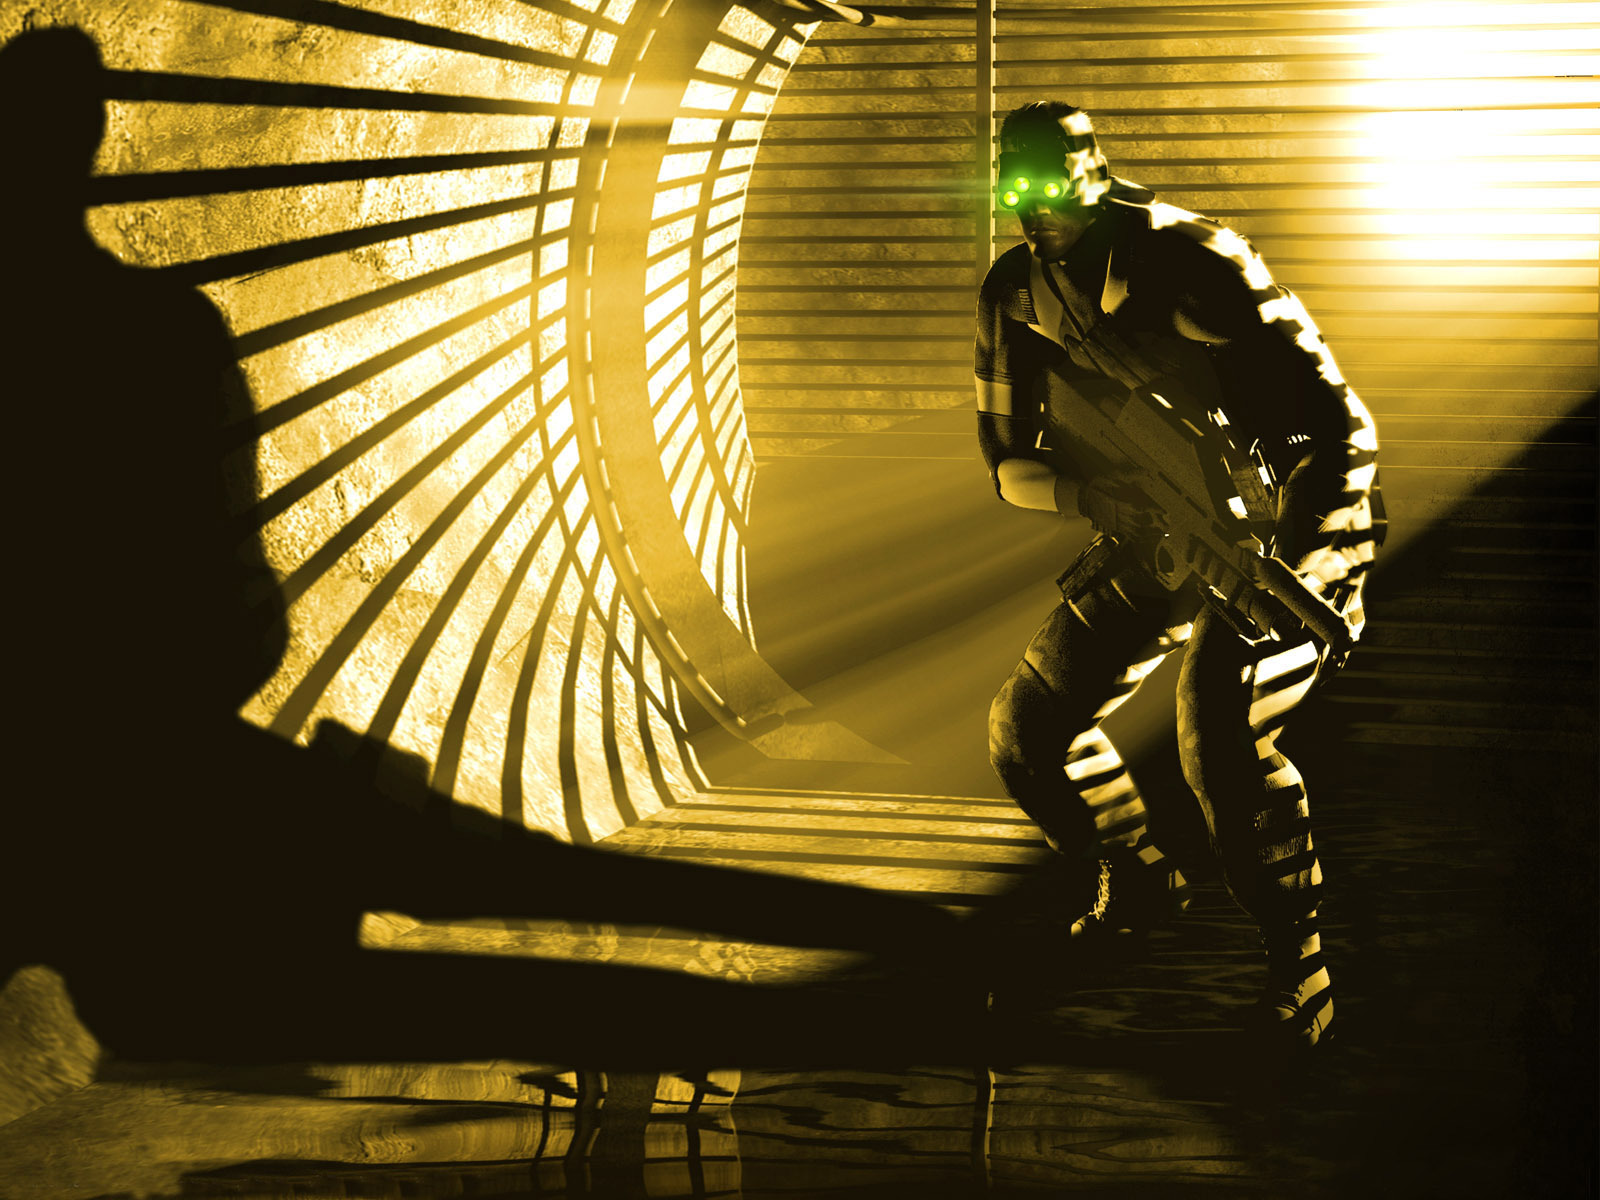 Популярные заставки и фоны Splinter Cell на компьютер